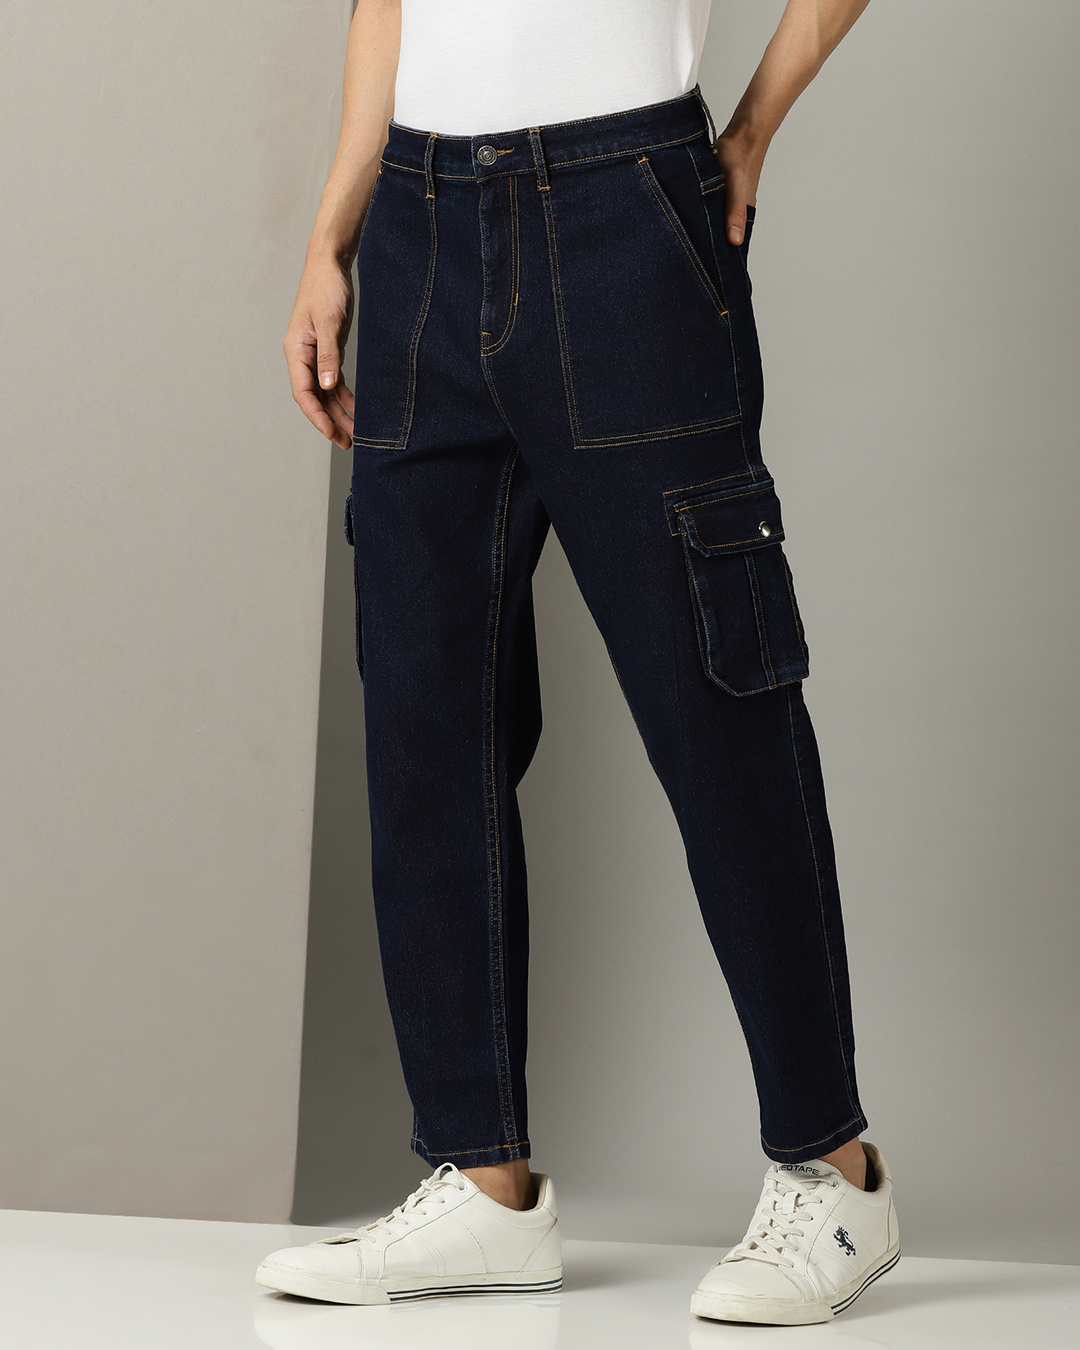 Buy Men's Blue Cargo Jeans Online at Bewakoof